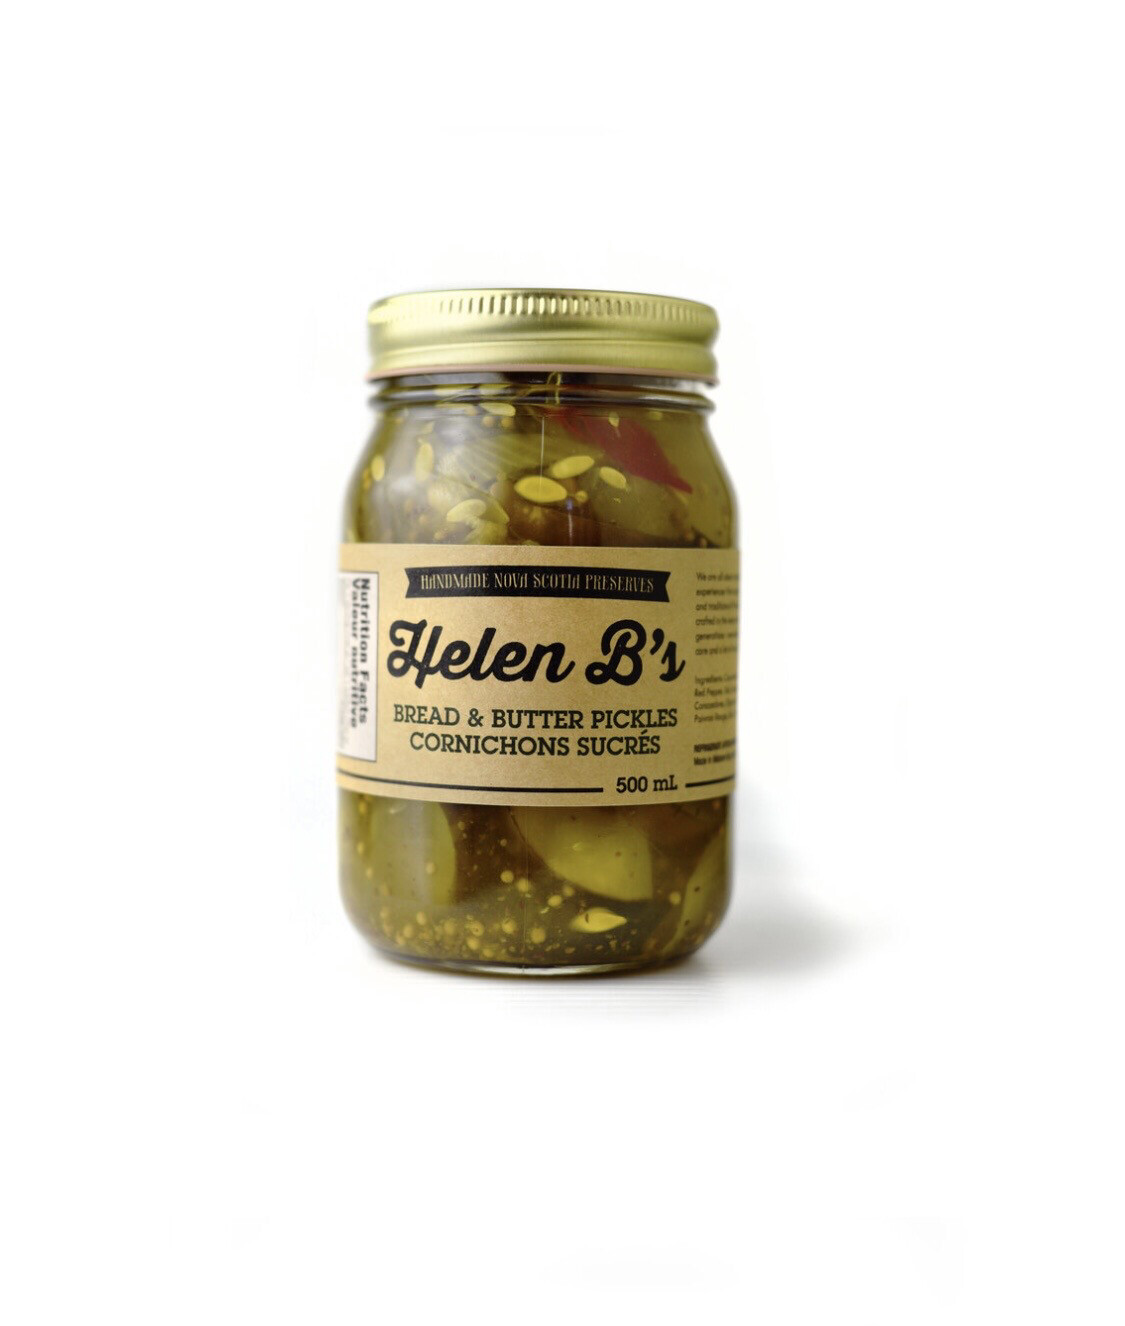 Helen B's Bread & Butter Pickles